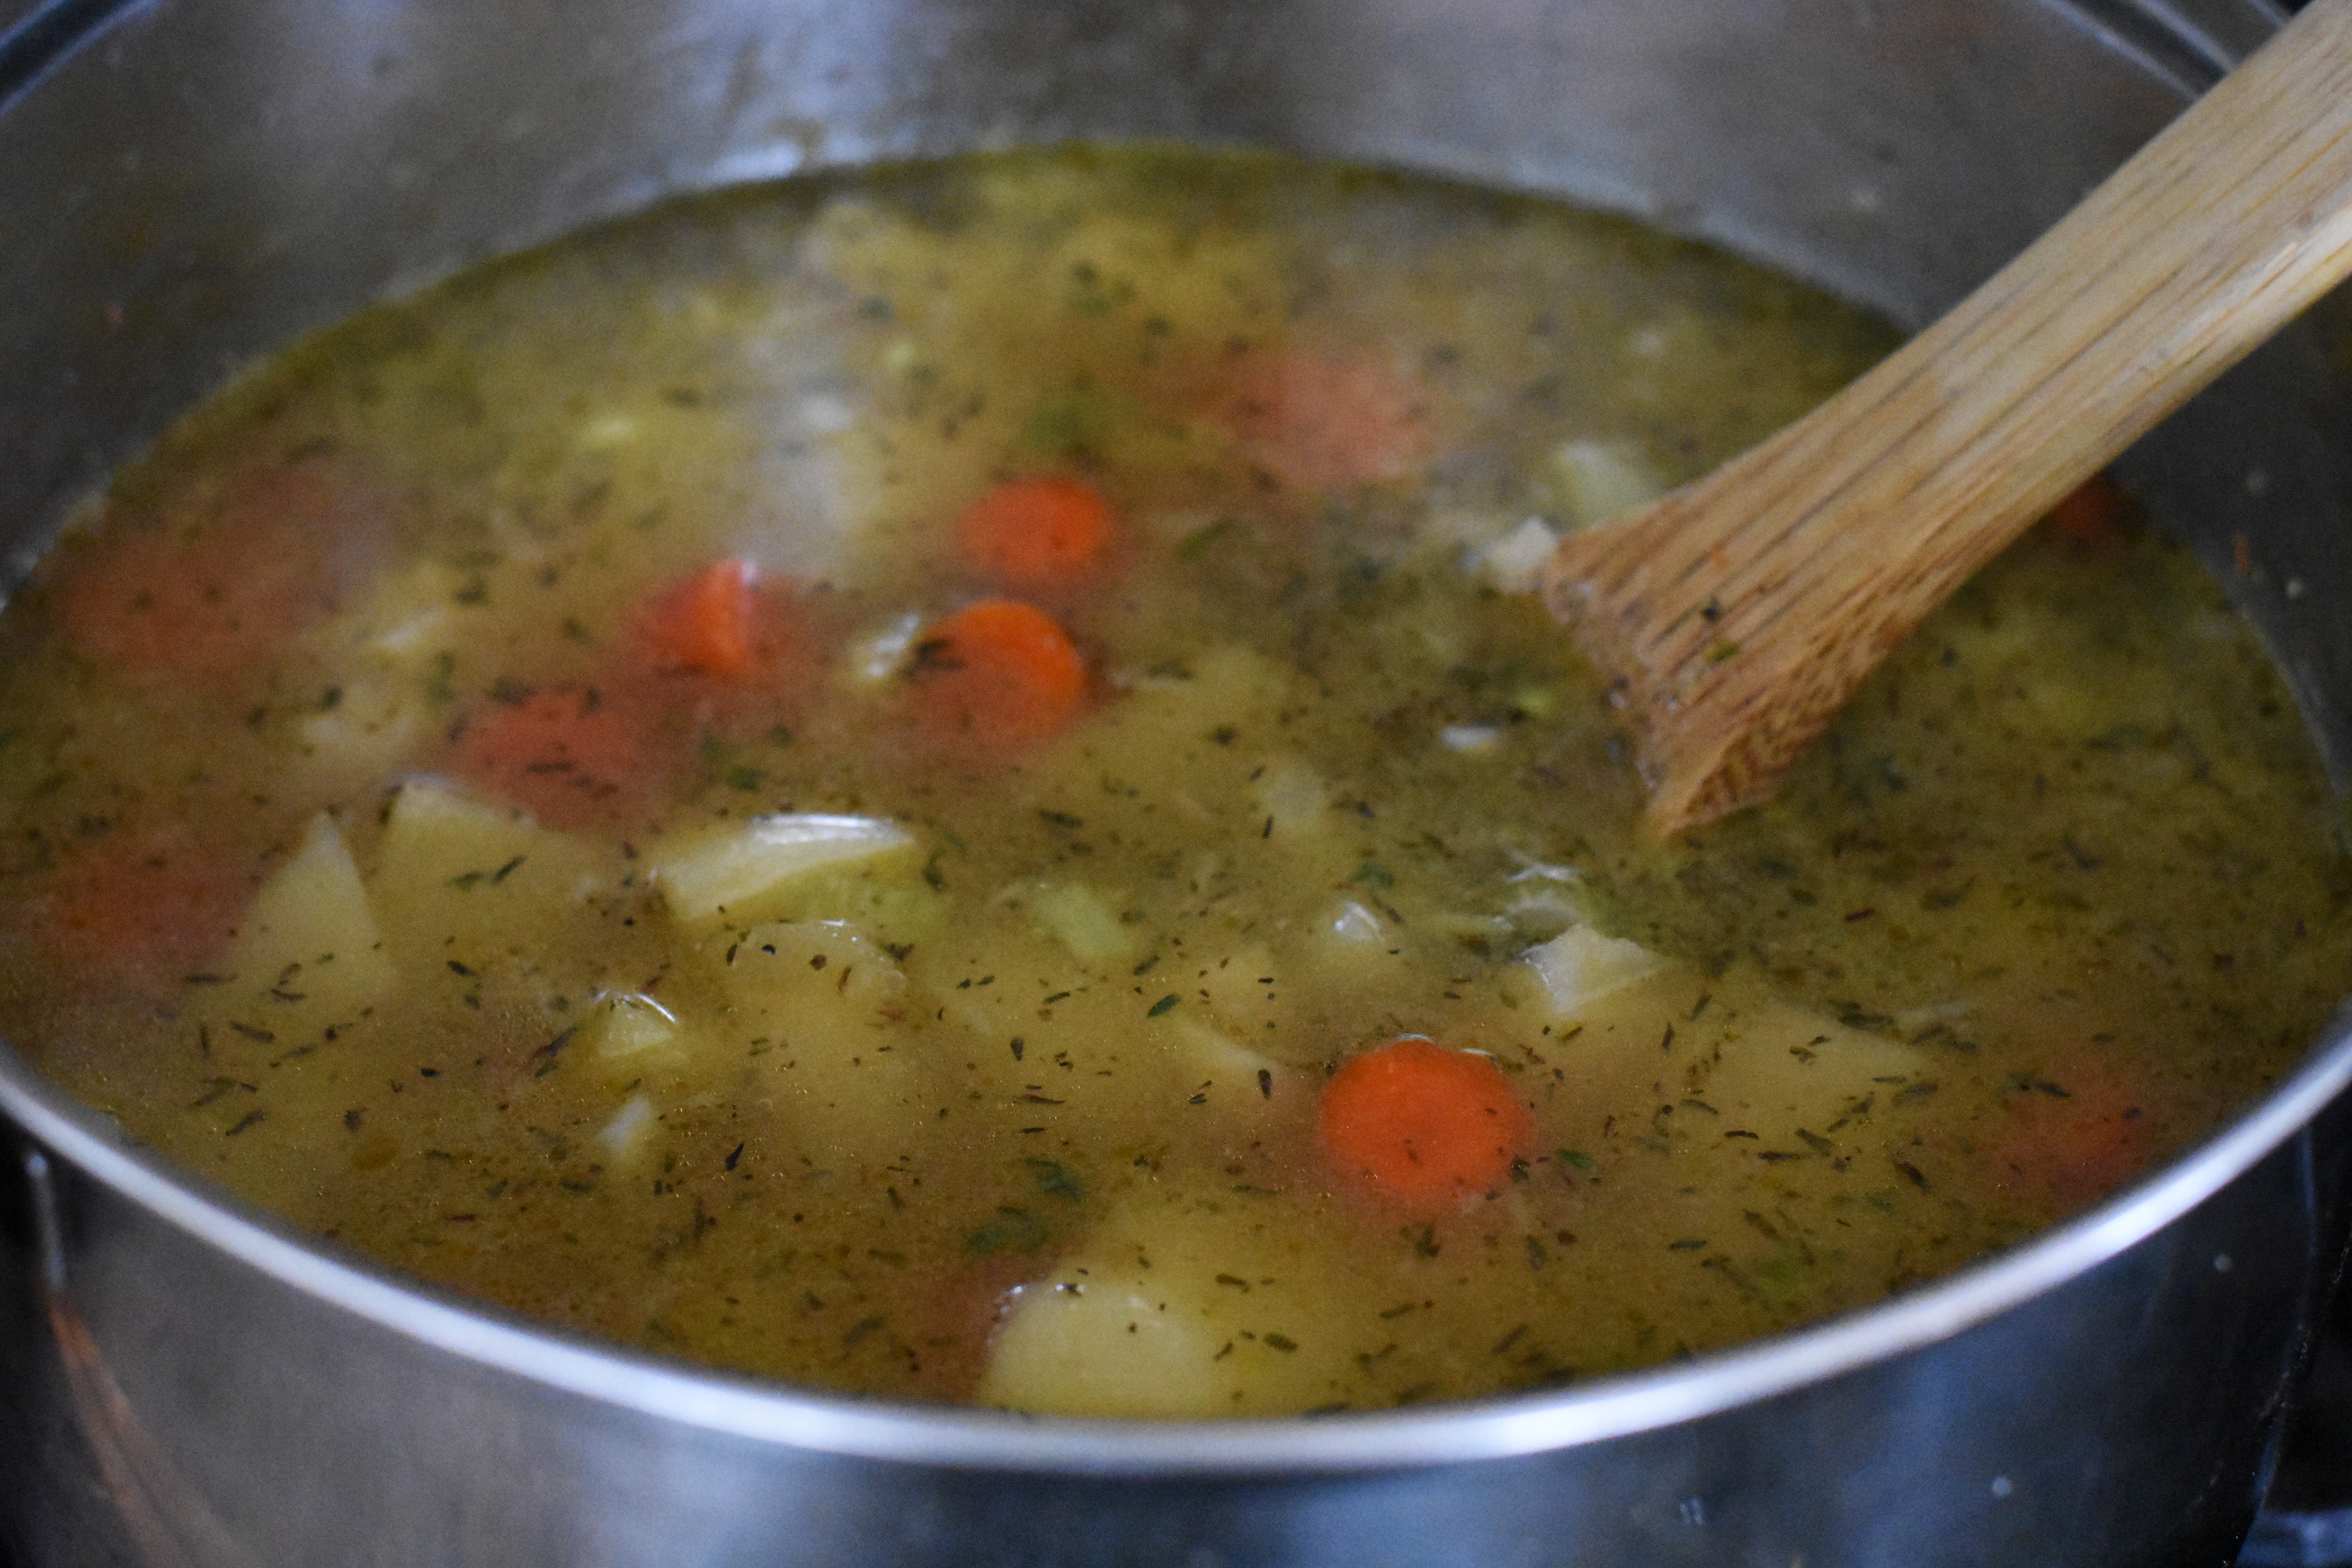 Making Potato Soup